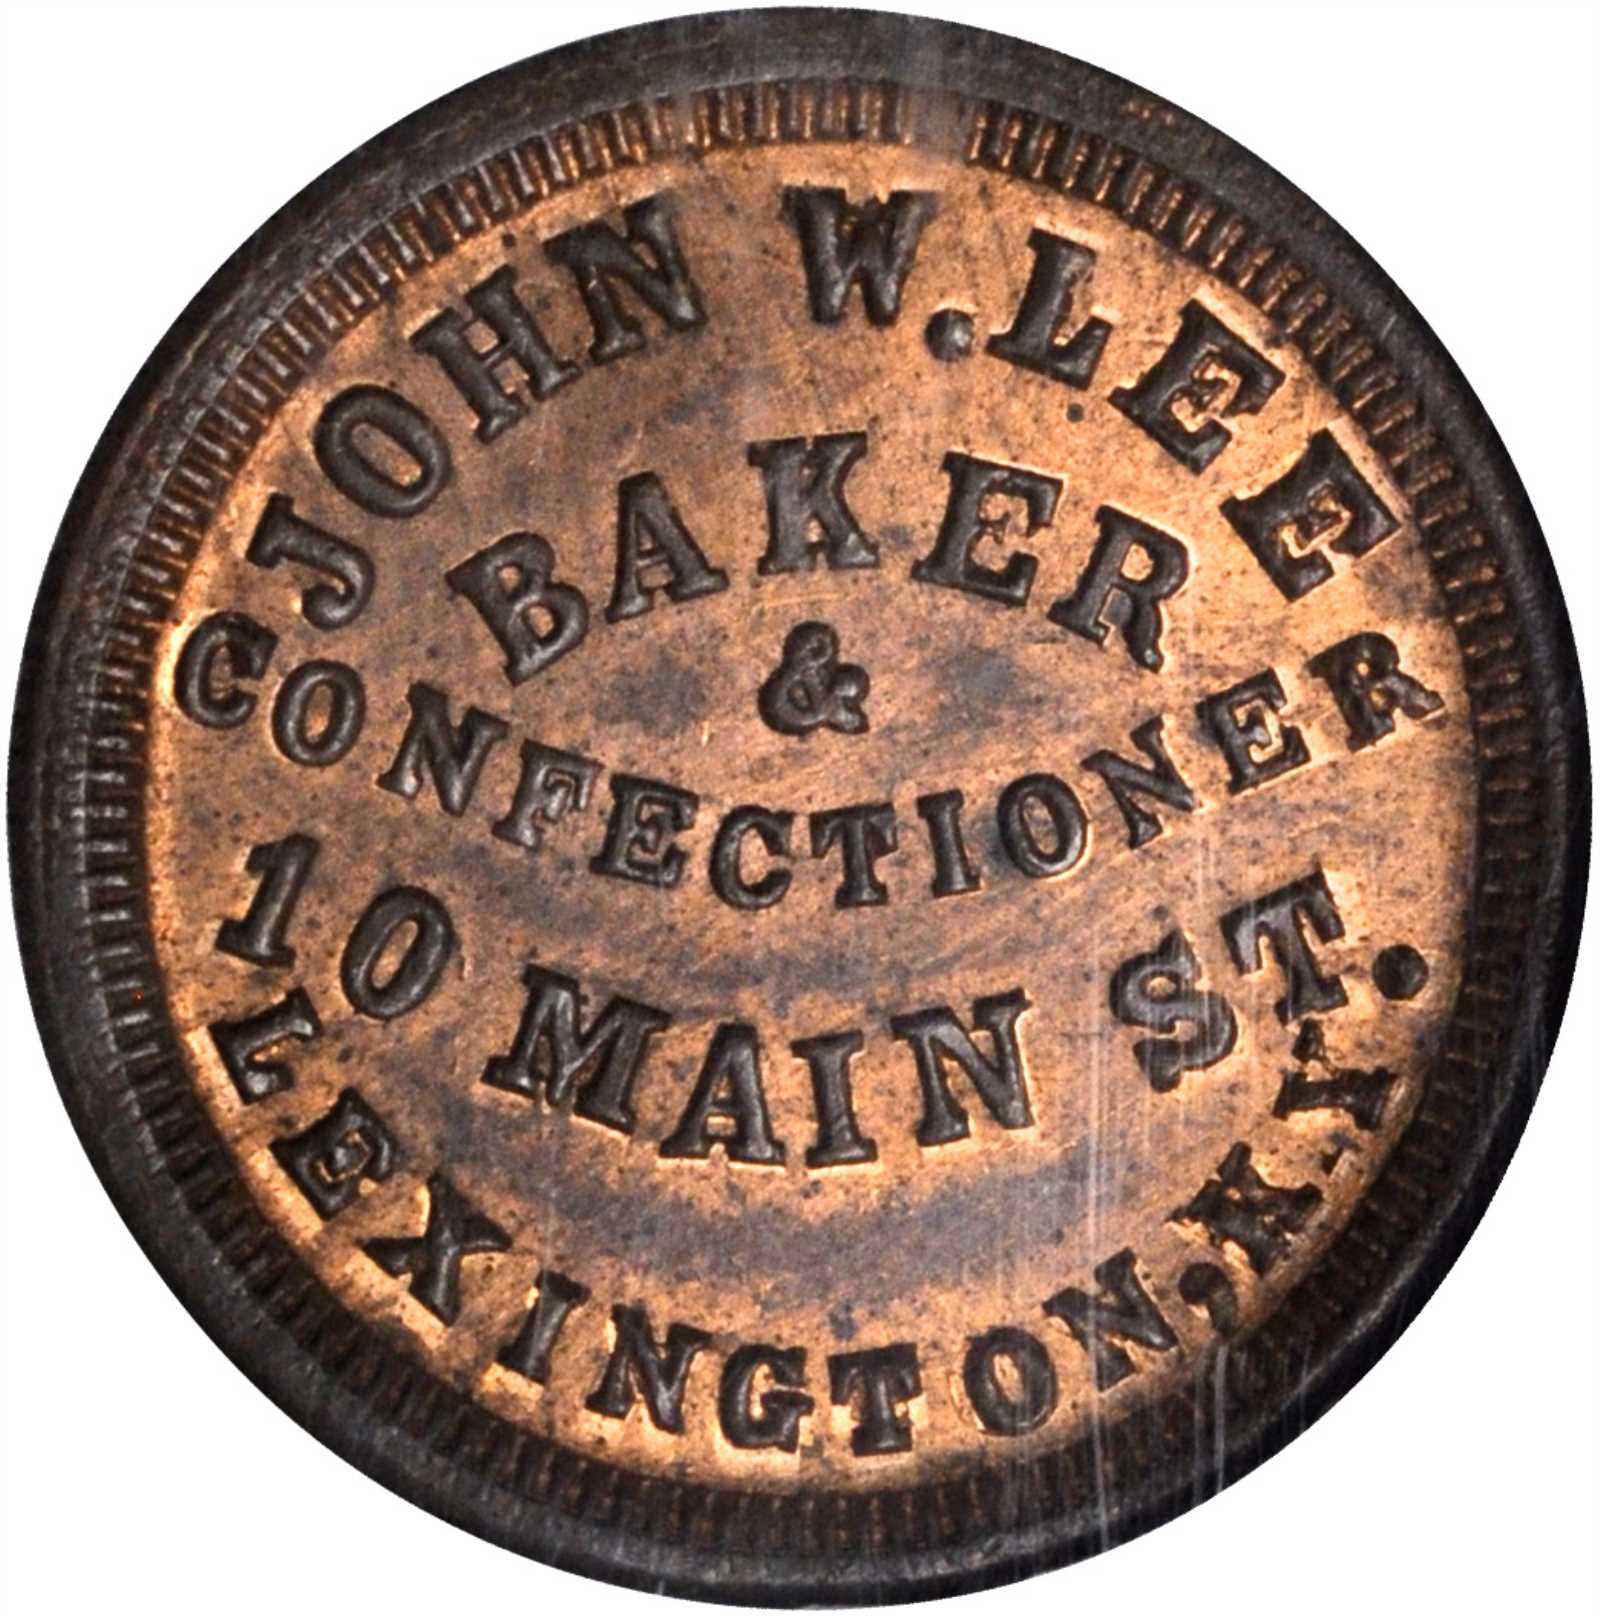 Undated John W. Lee Token | Sell, Auction, Rare Token Buyer